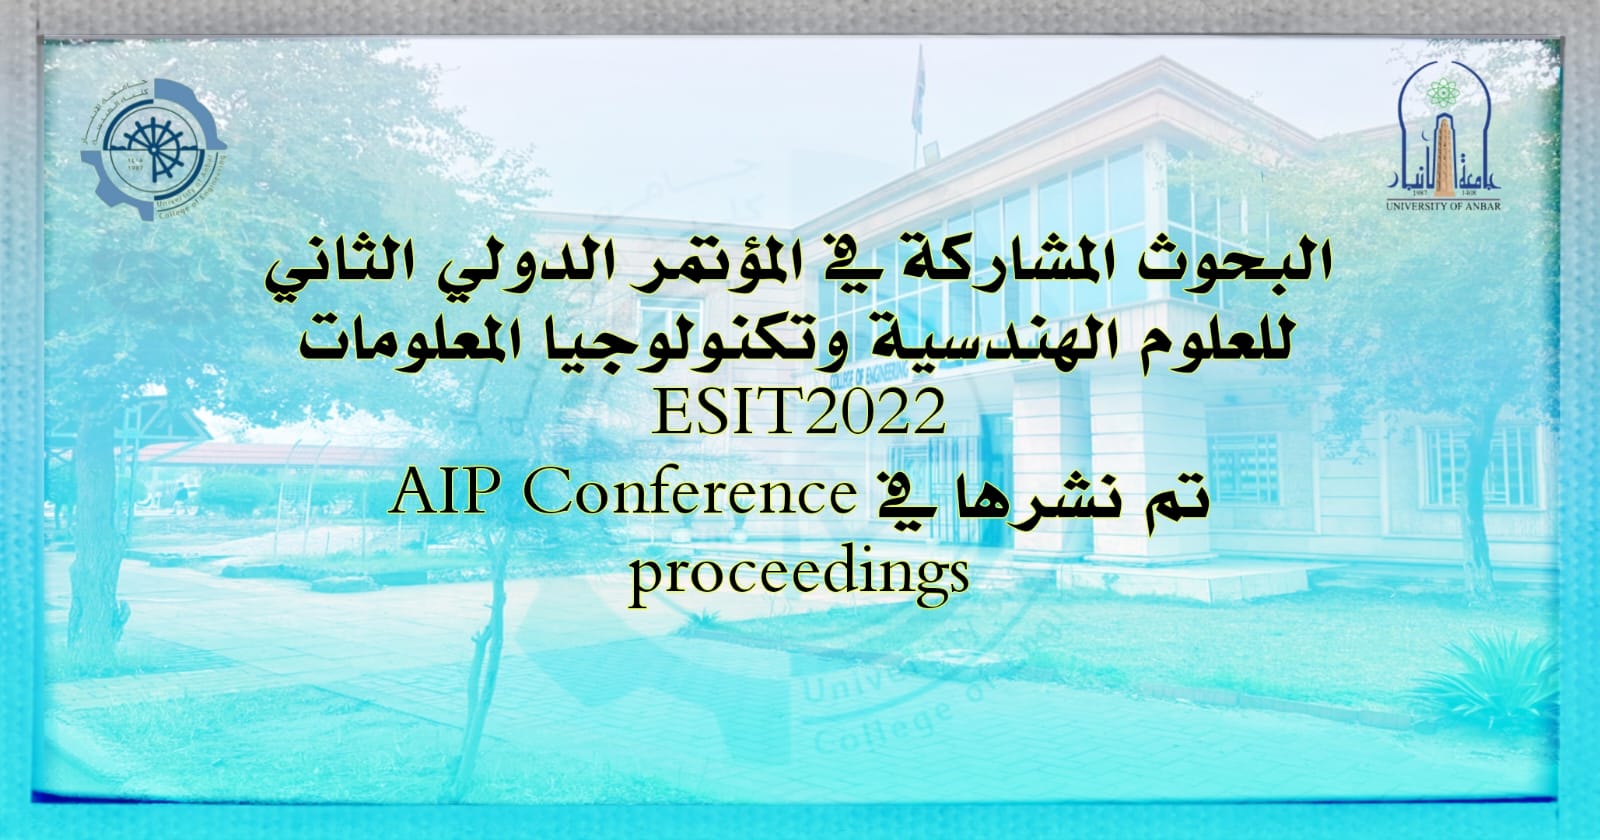 البحوث المشاركة في المؤتمر الدولي الثاني للعلوم الهندسية وتكنولوجيا المعلومات ESIT2022 jl تم نشرها في AIR Conference Proceedings